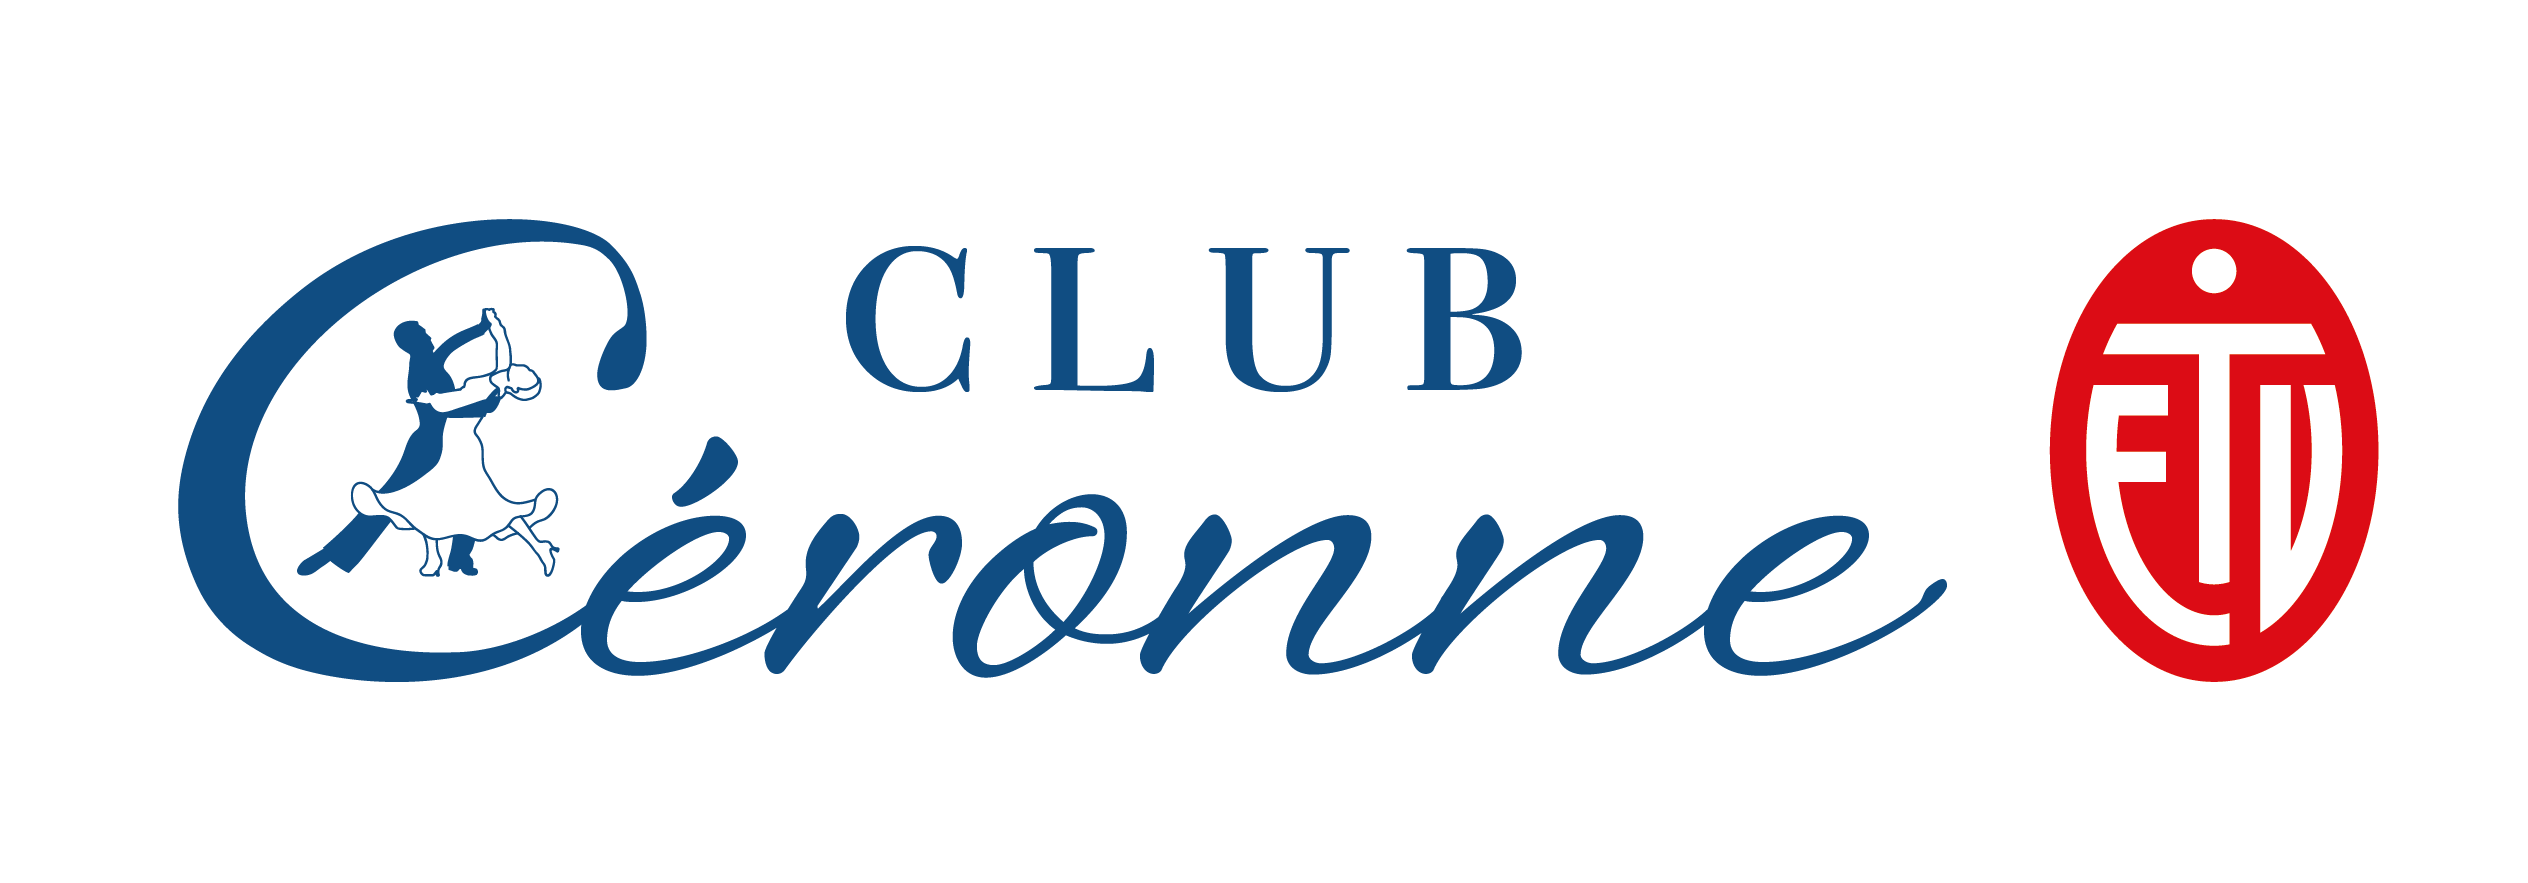 Club Céronne